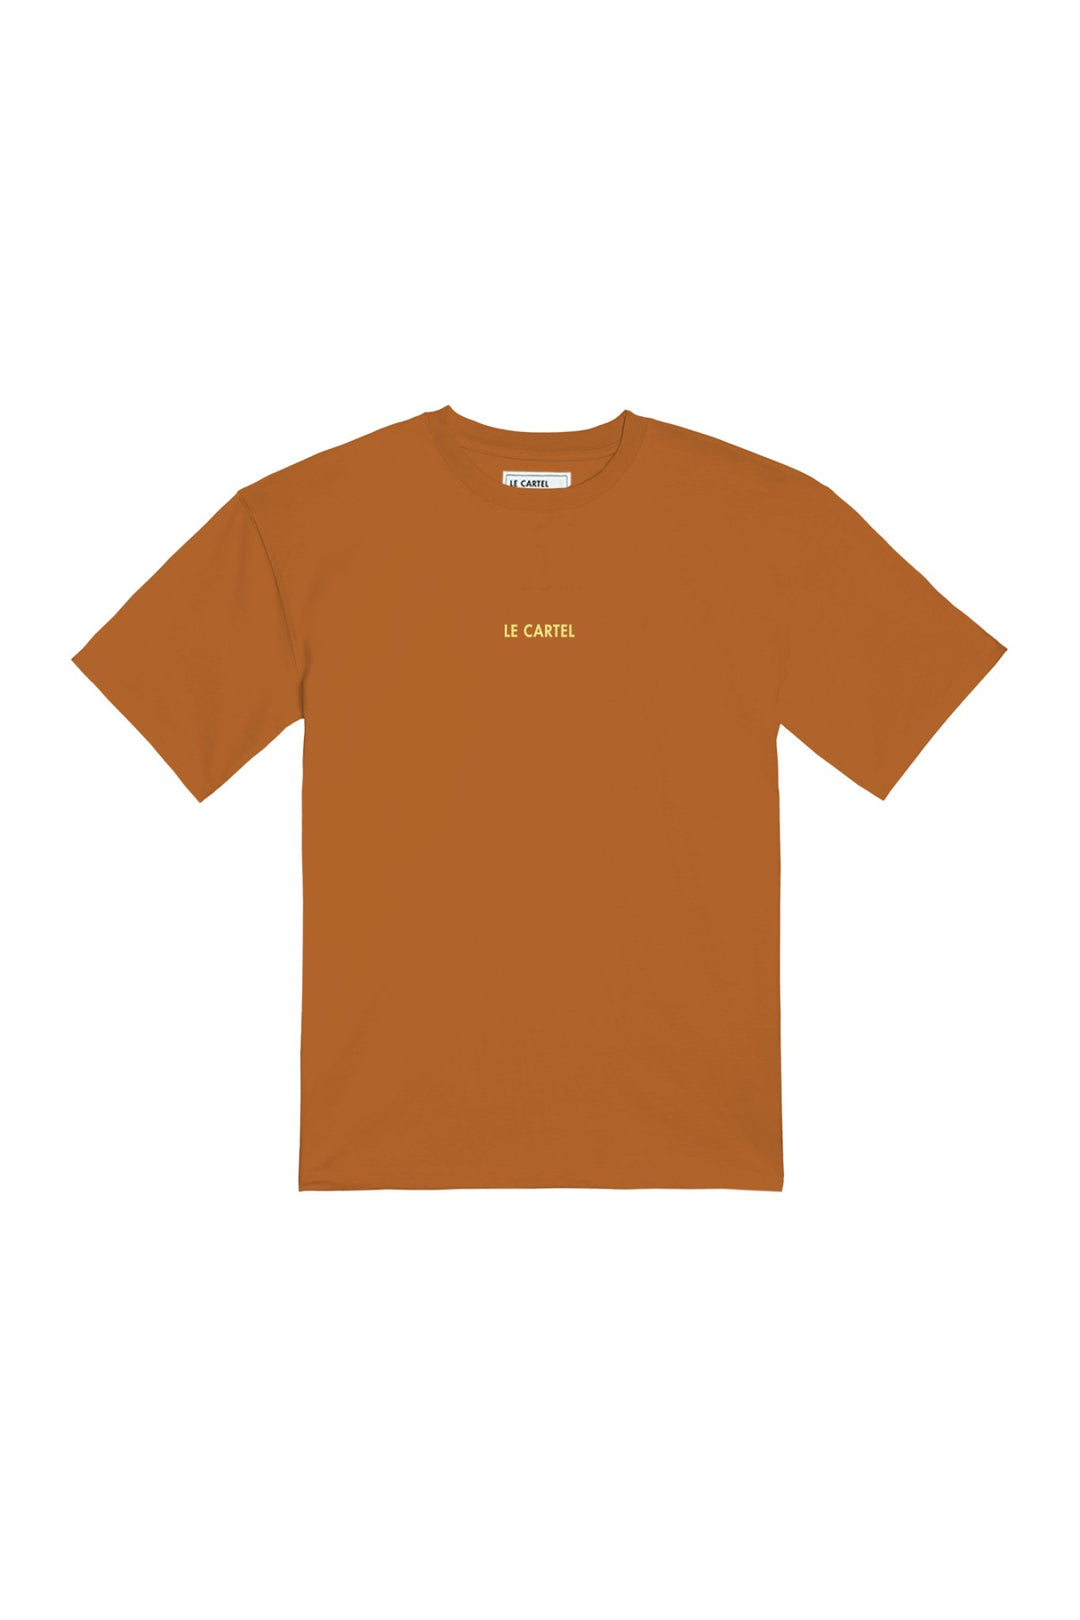 JOUR DE FÊTE・T-shirt unisexe・Orange - Le Cartel